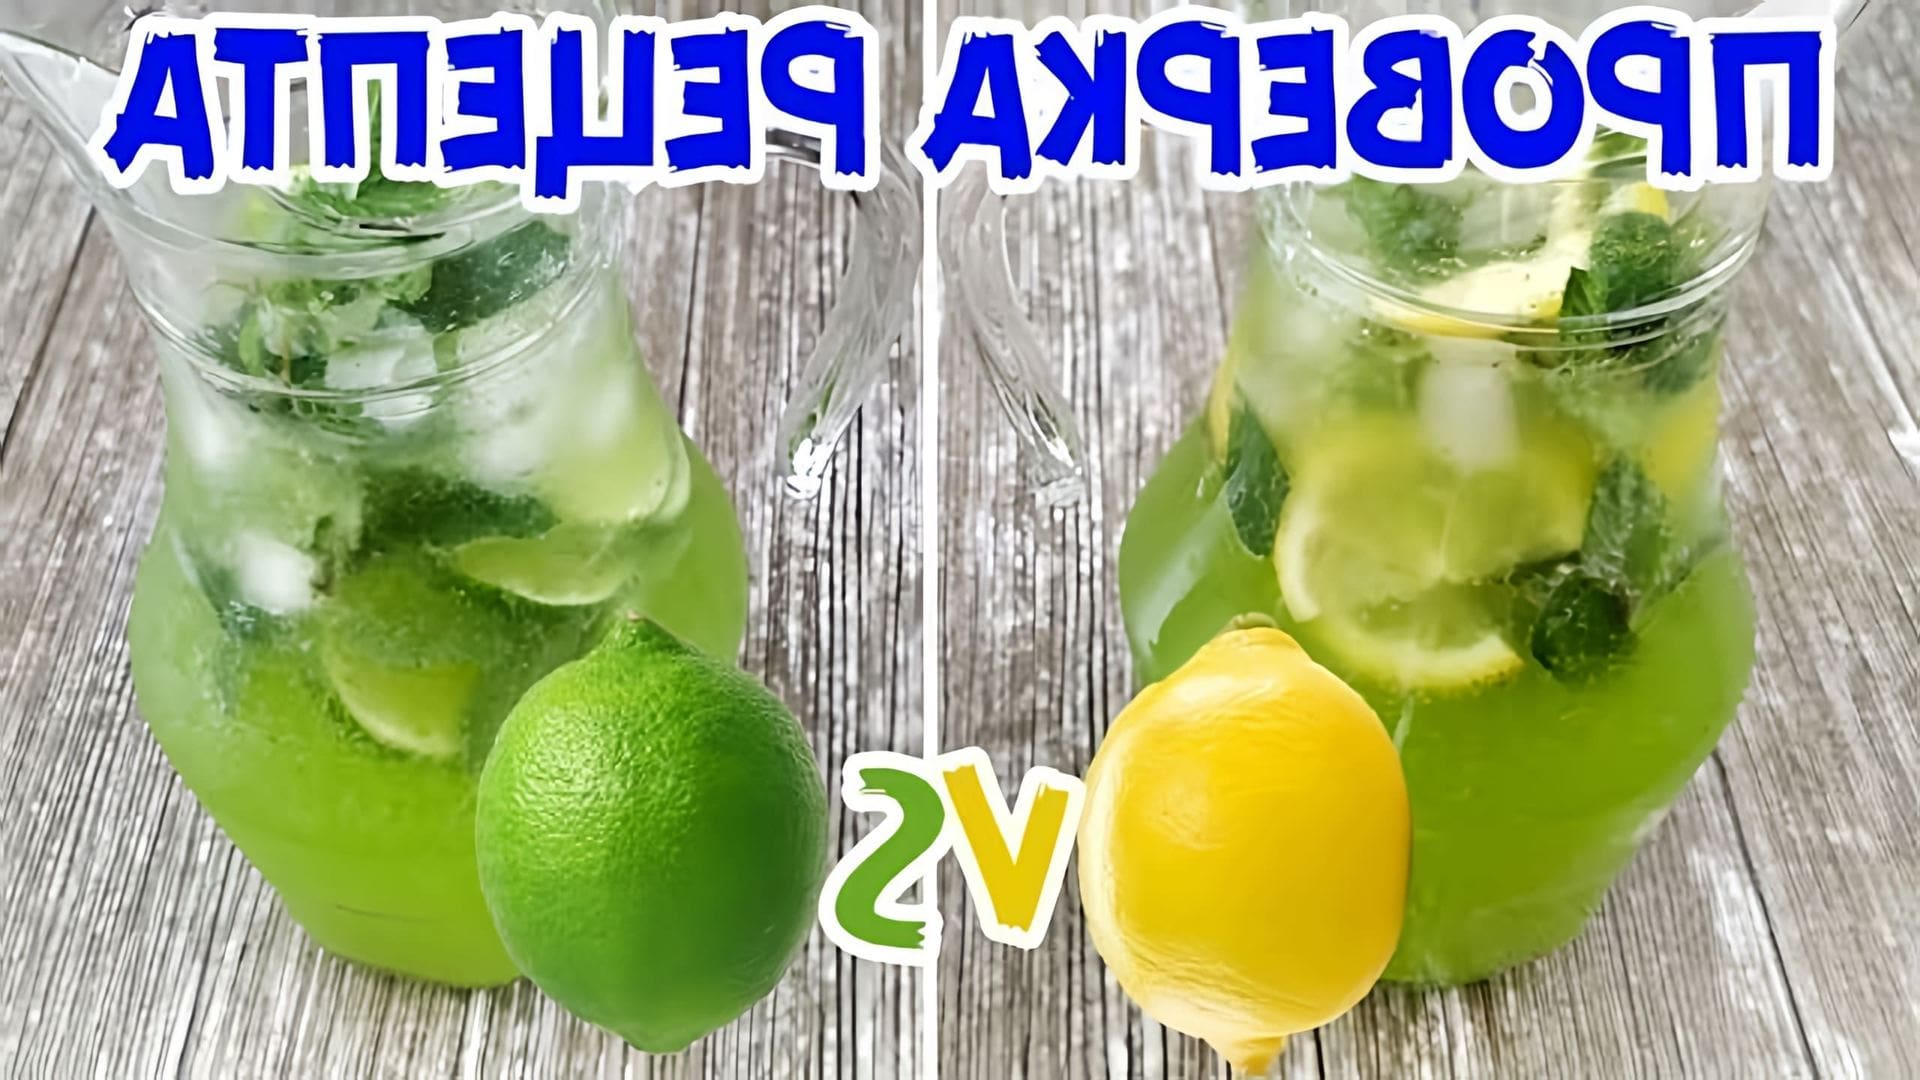 В этом видео-ролике я сравню два вида мохито - с лаймом и лимоном, чтобы определить, какой из них вкуснее